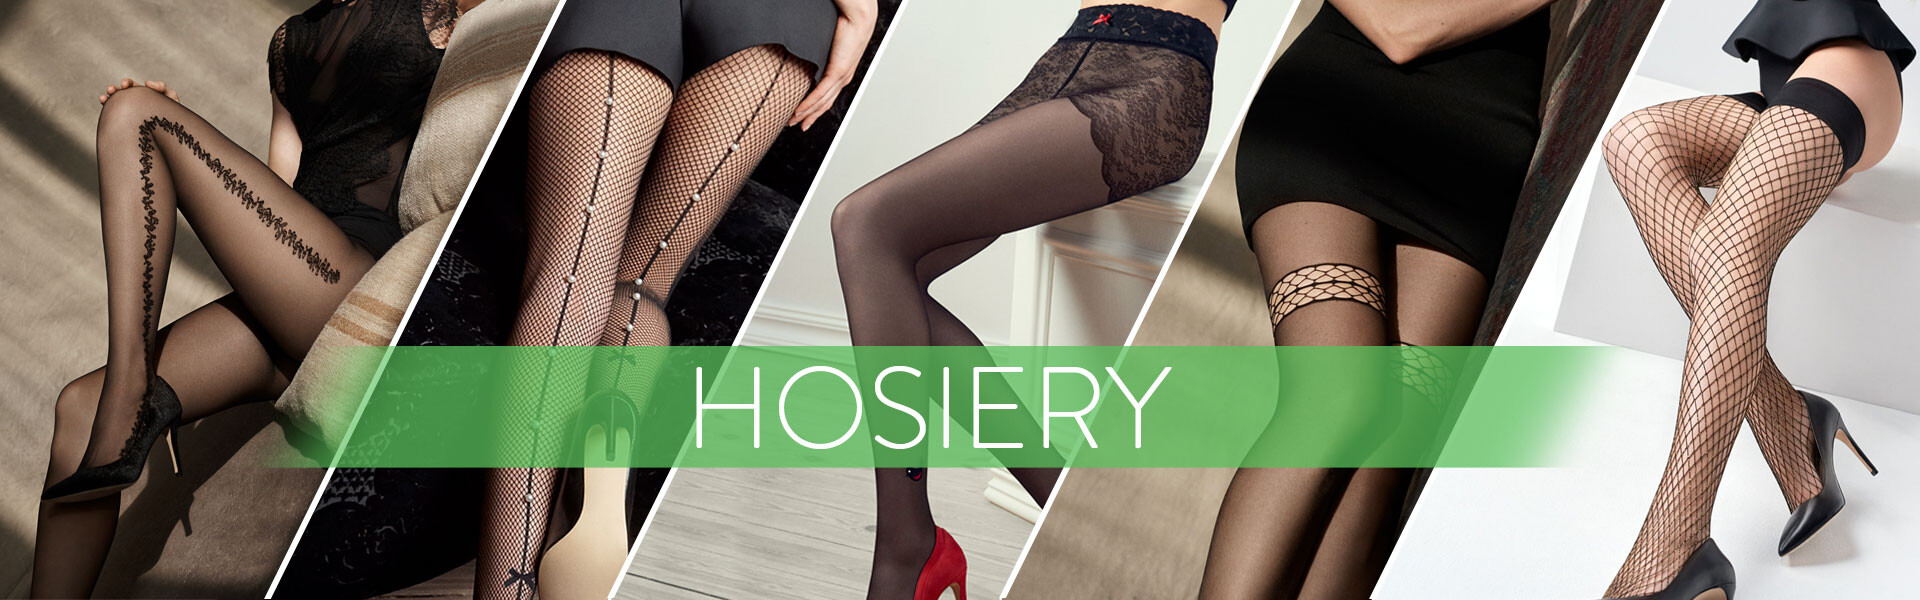 Leggings & Hosiery - Lace & Day